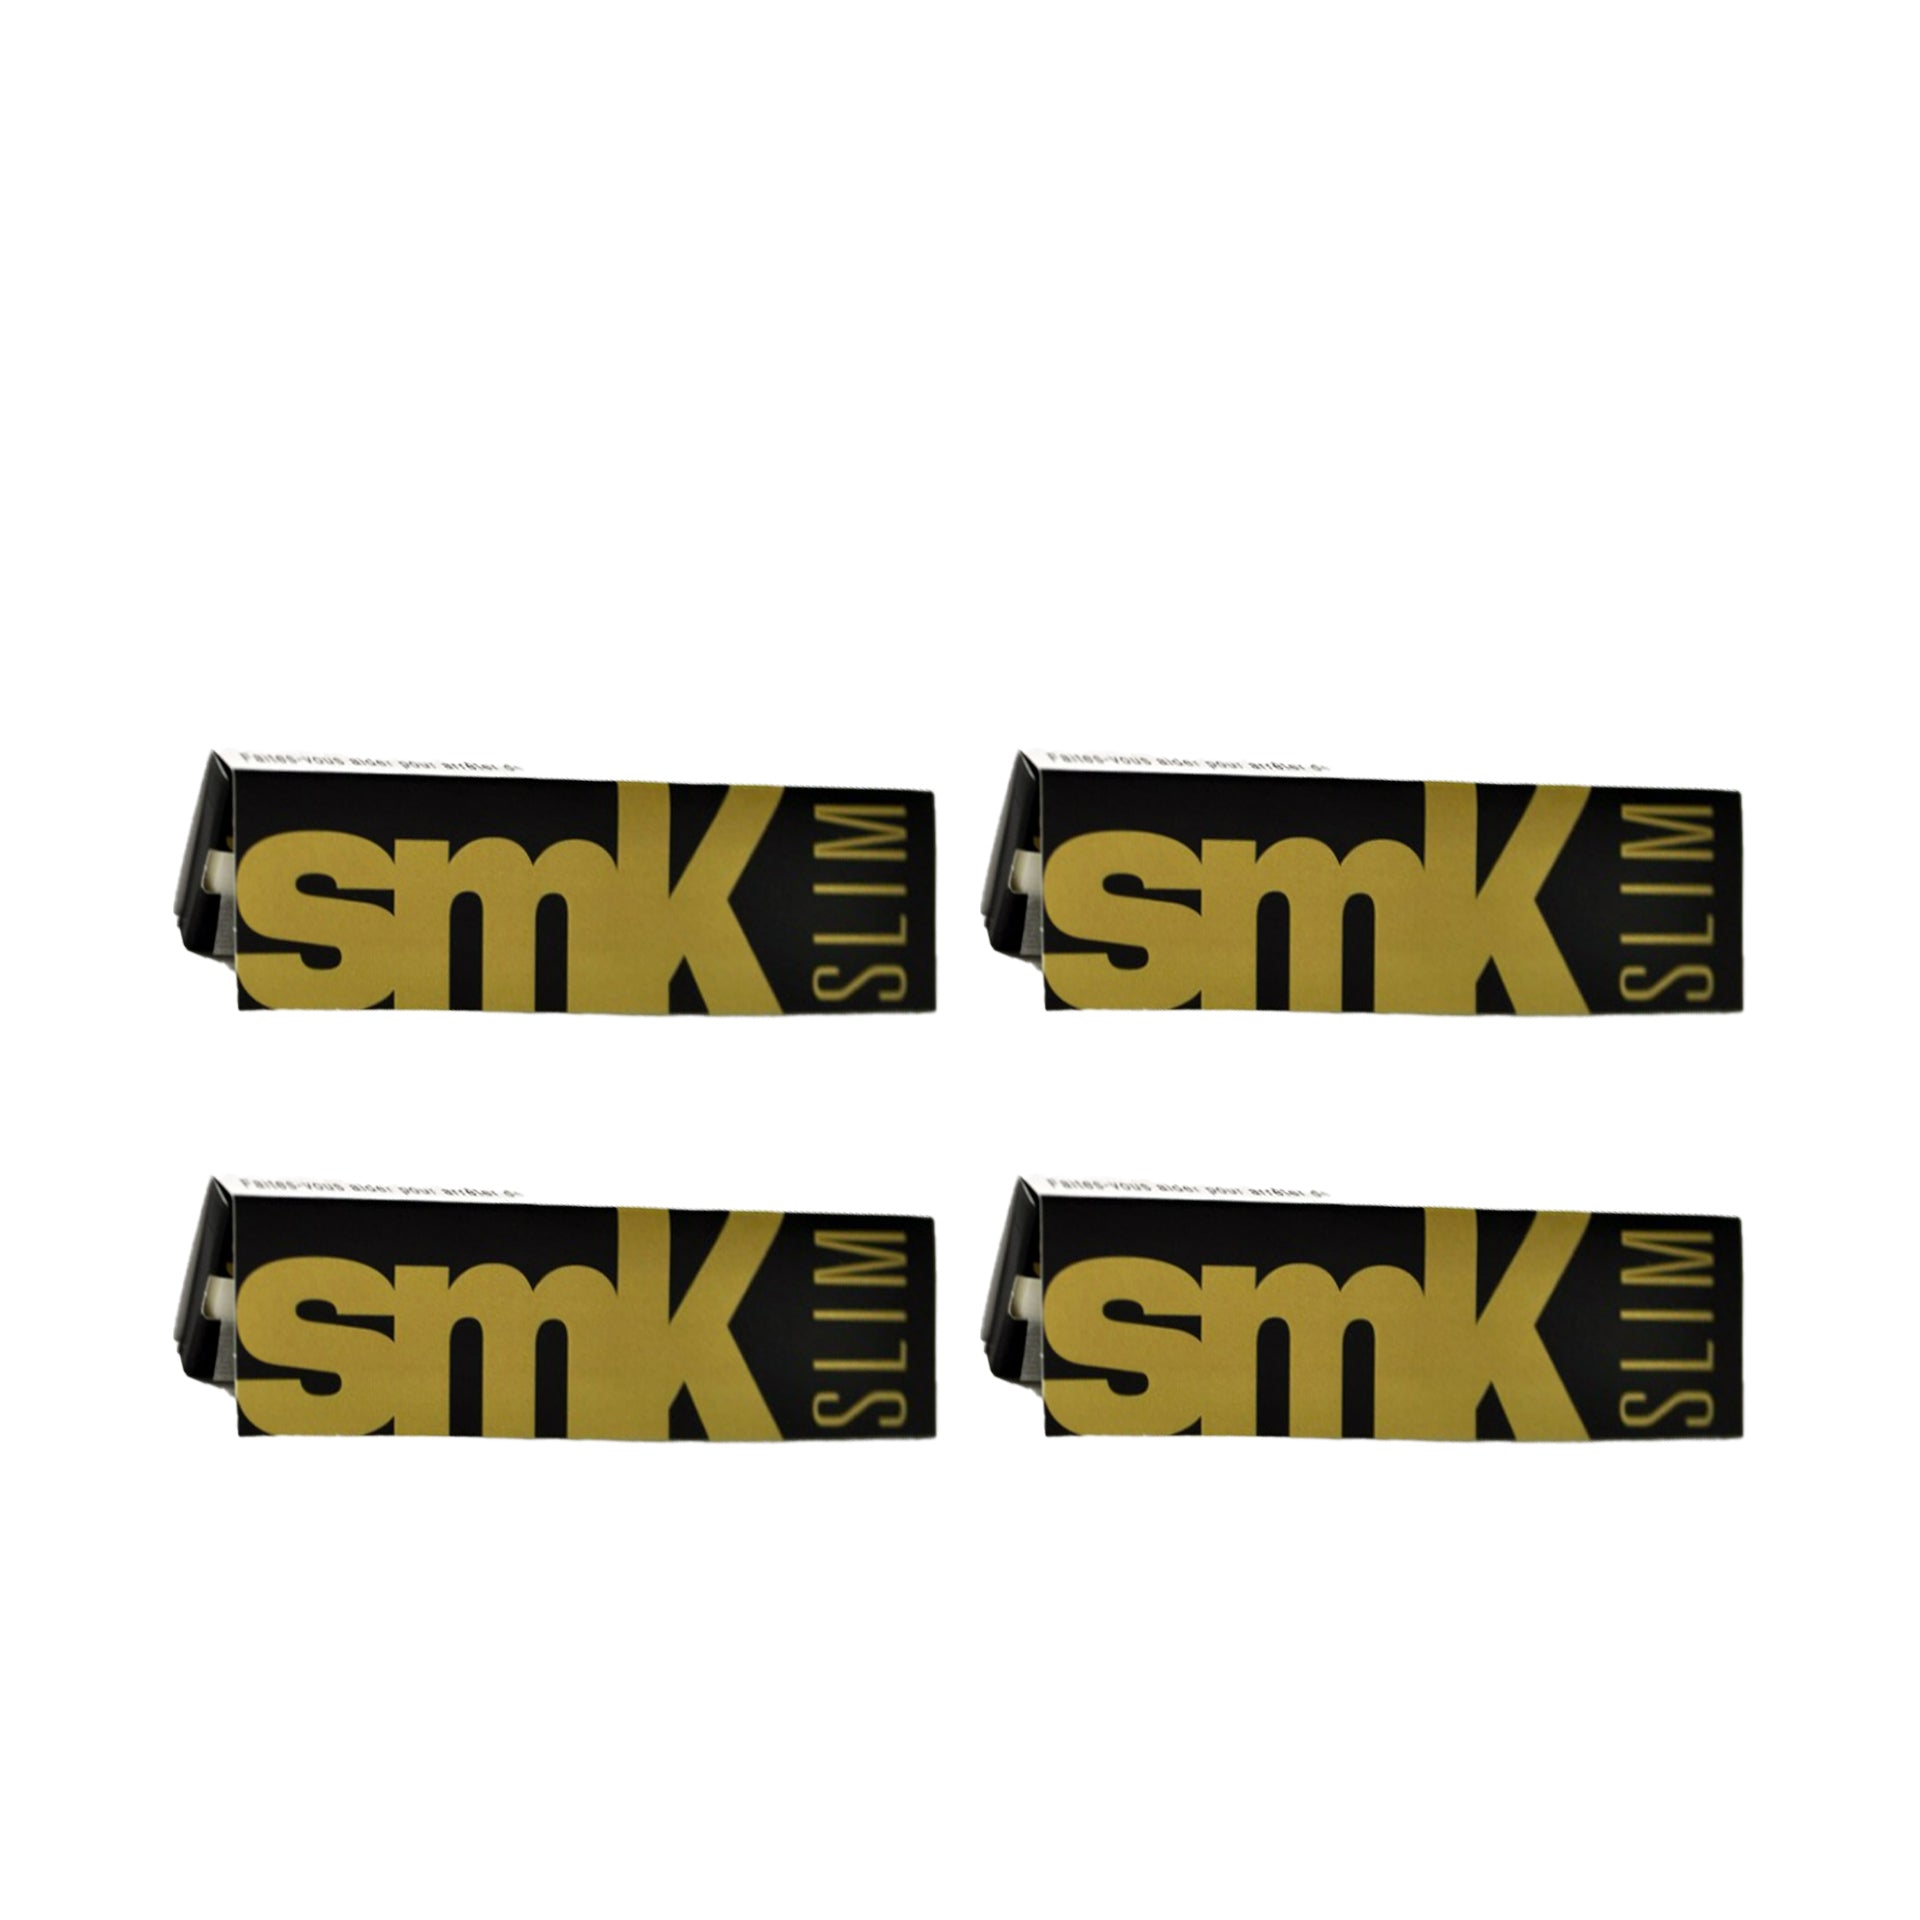 SMK Mortalhas King Size Slim 33 un - Pack 4 x 33 un